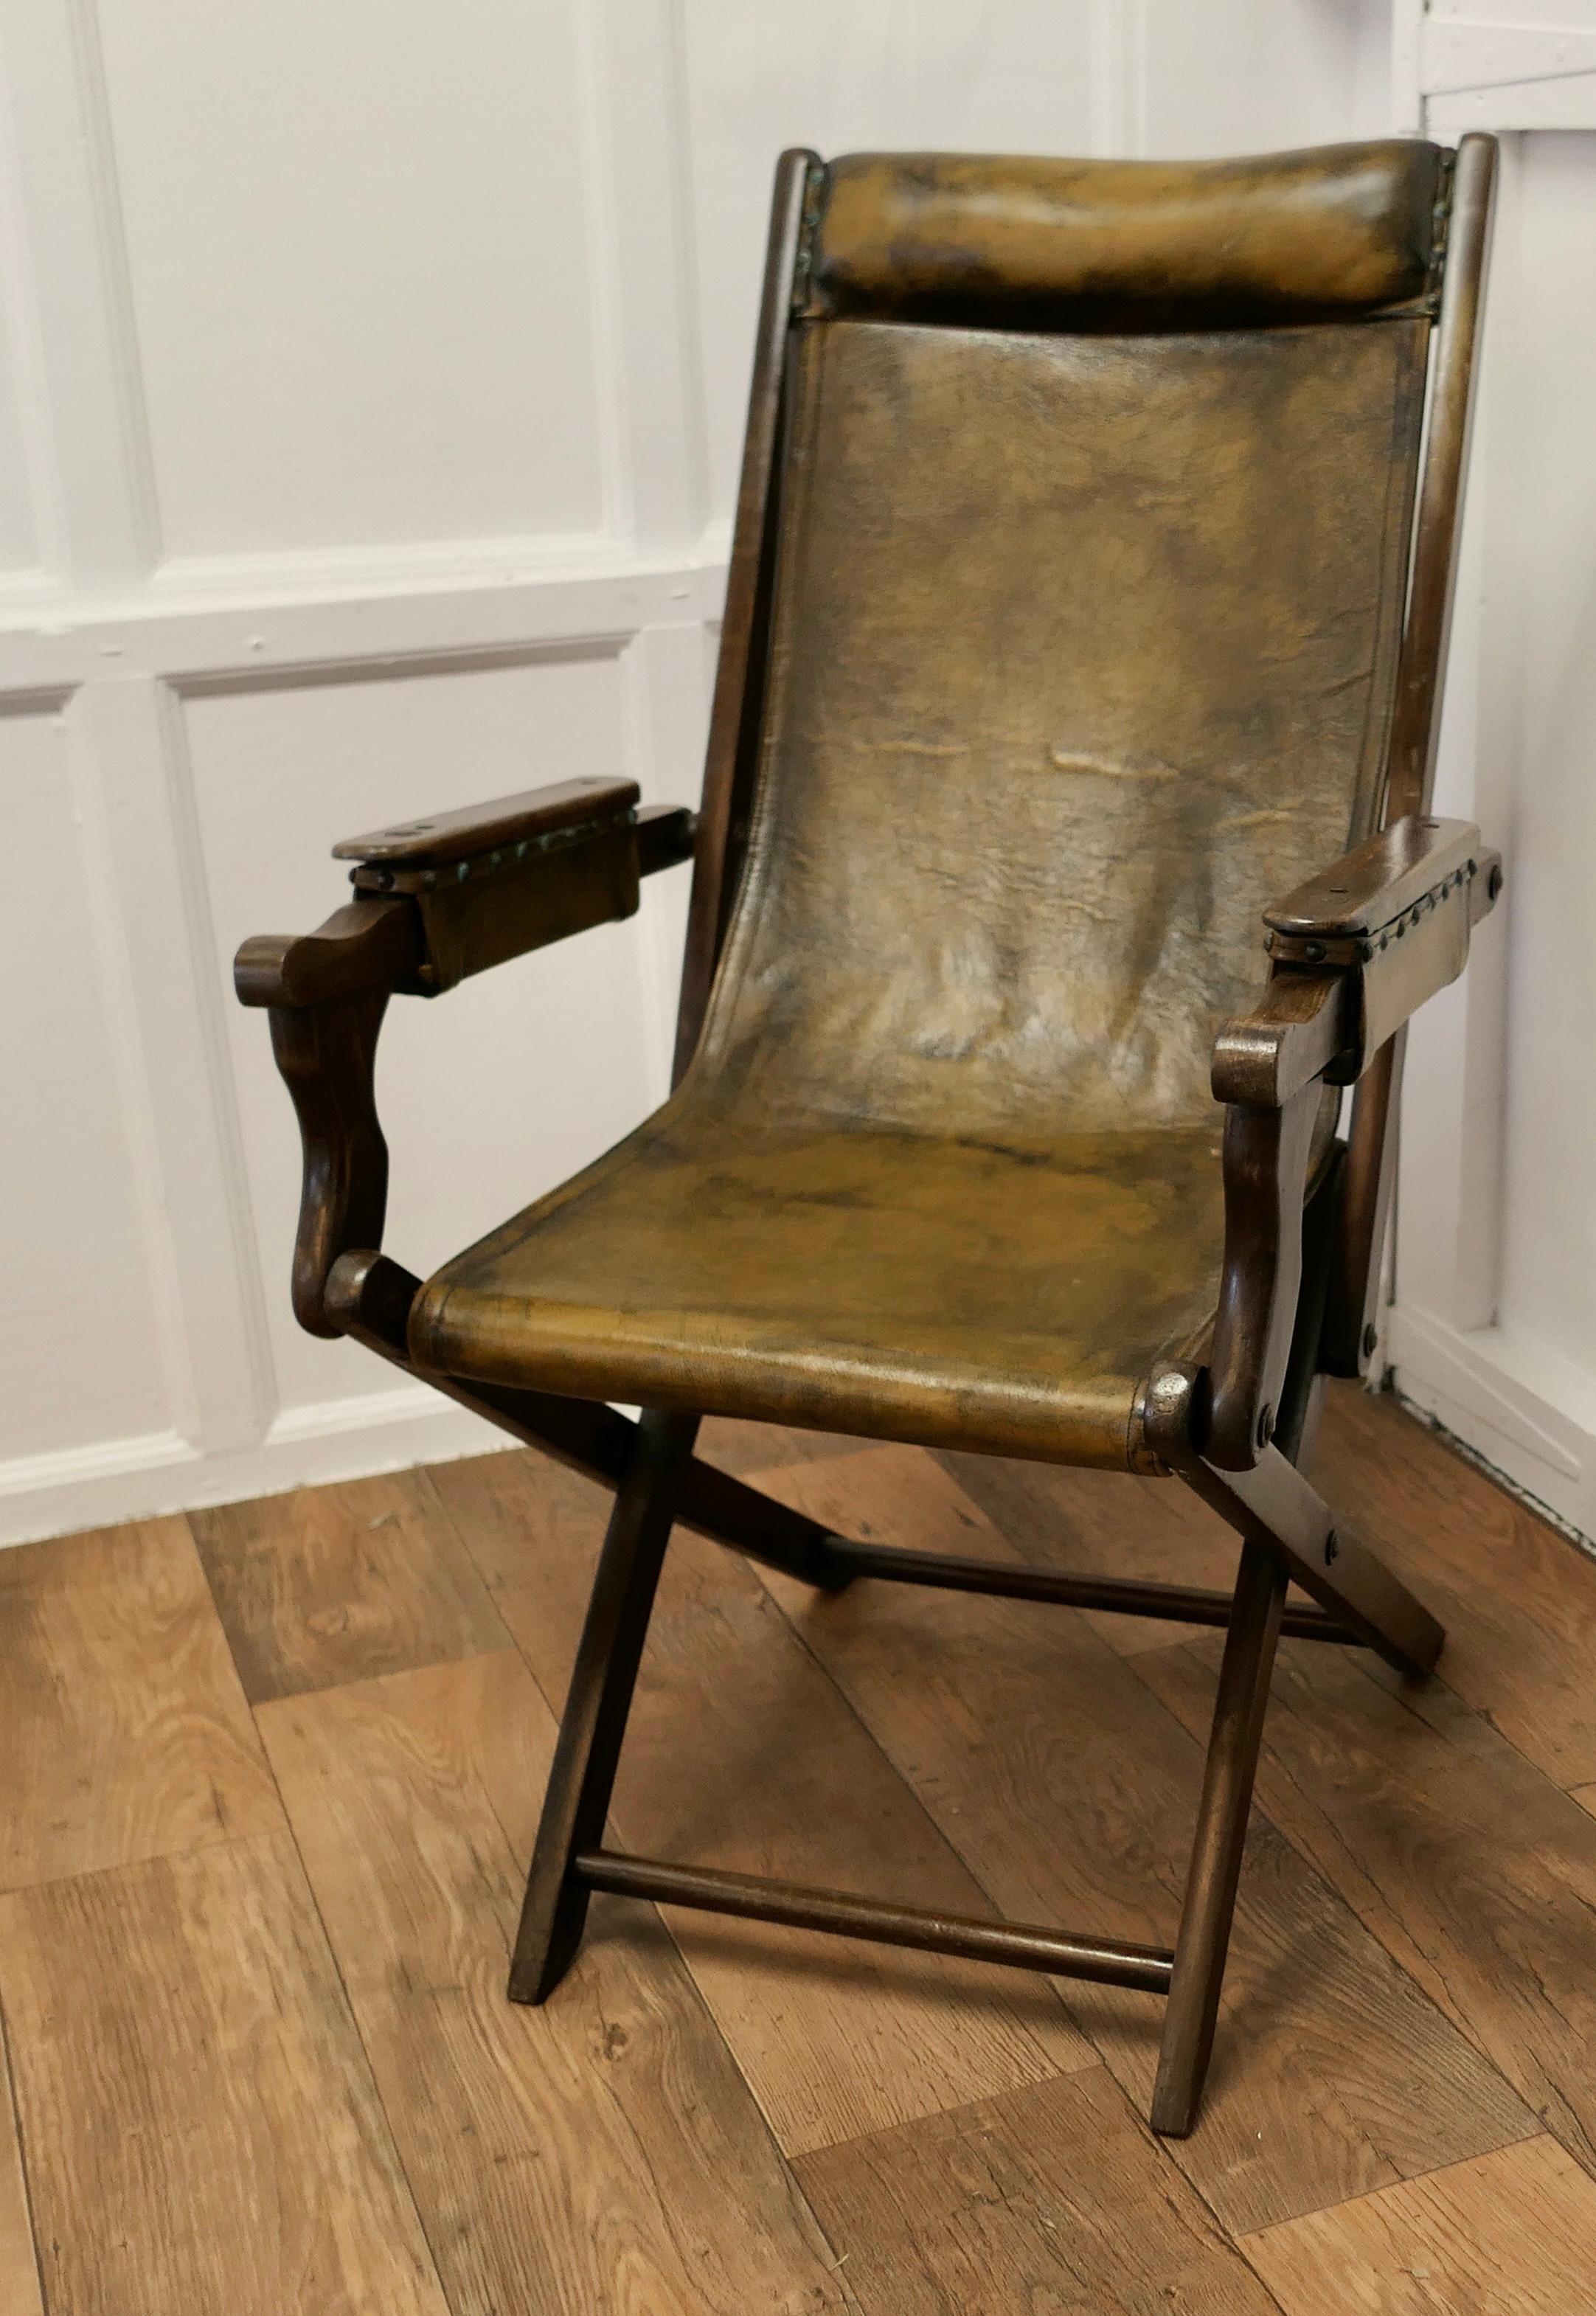 Edwardian Steamer Chair, faltbarer Leder-Deck Chair


Edwardian Steamer Chair oder Folding Campaigner Deck Chair, der Stuhl ist in Buche gefertigt und mit olivgrünem Leder gepolstert 
Der gepolsterte Klapprahmen mit doppelter Kreuzstreckung